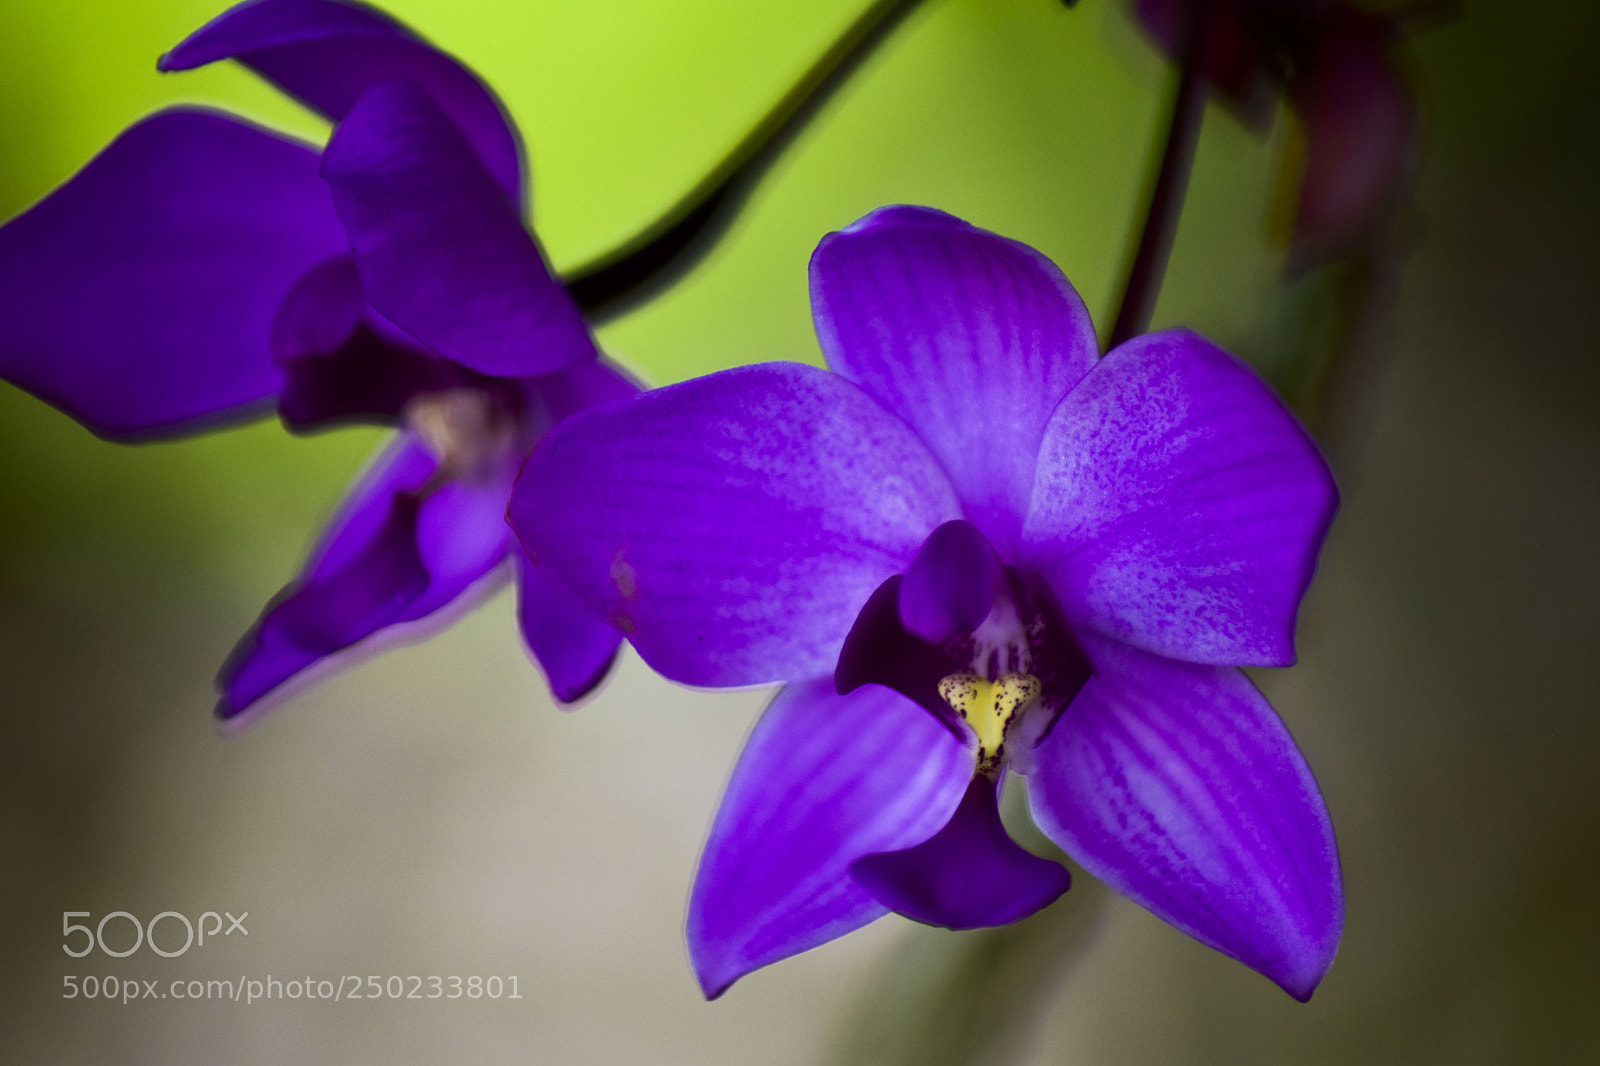 Nikon D5300 sample photo. Orquídeas violetas photography